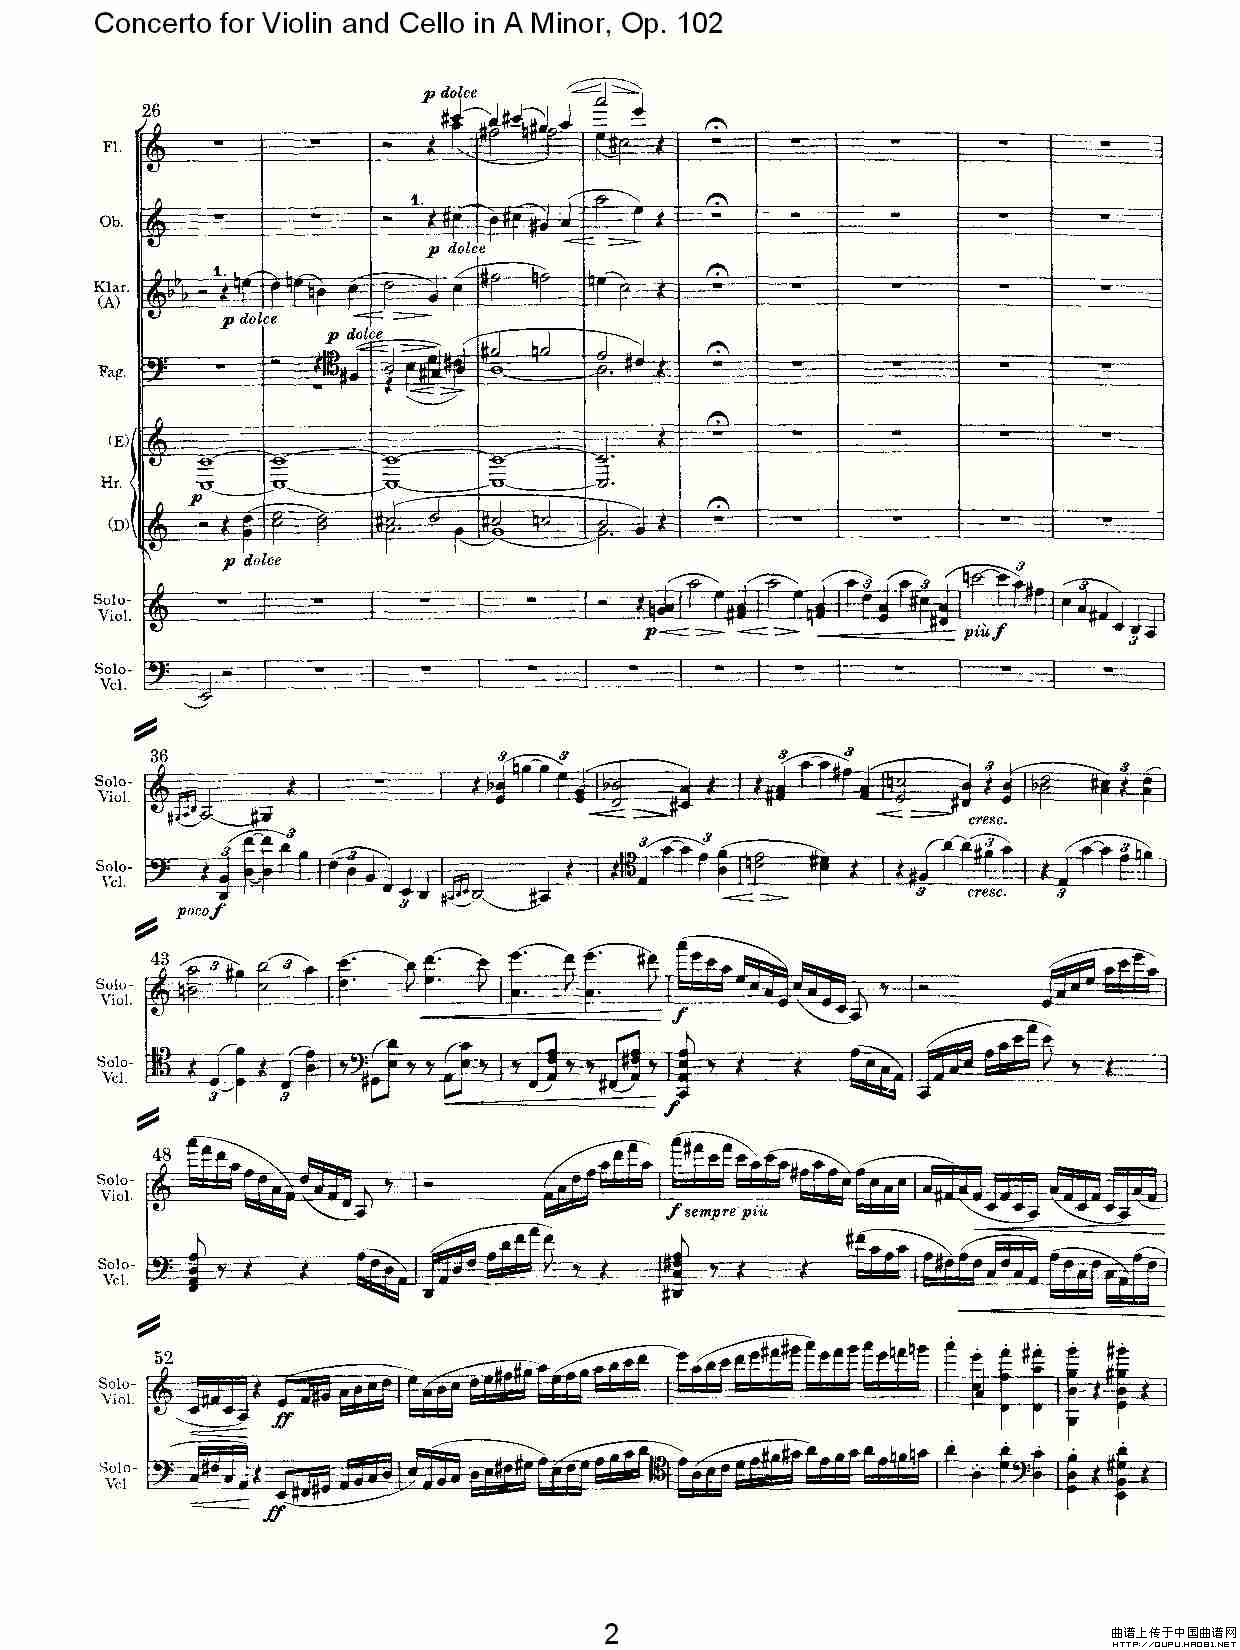 A小调小提琴与大提琴协奏曲, Op.102第一乐章小提琴谱